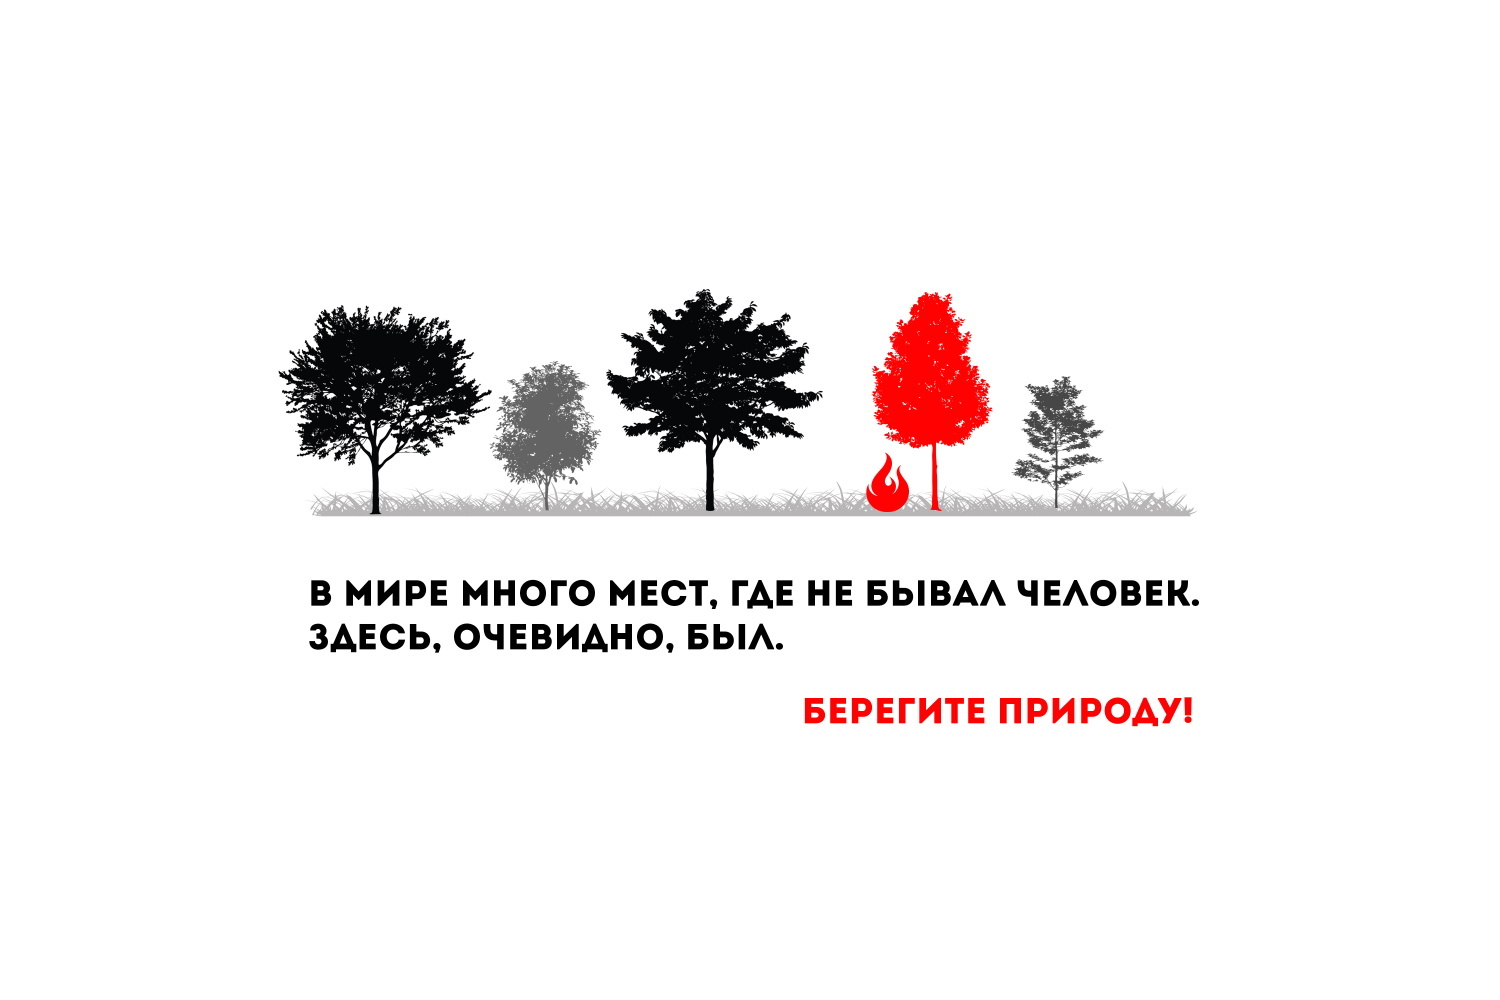 Министерство лесного хозяйства Республики Башкортостан напоминает!